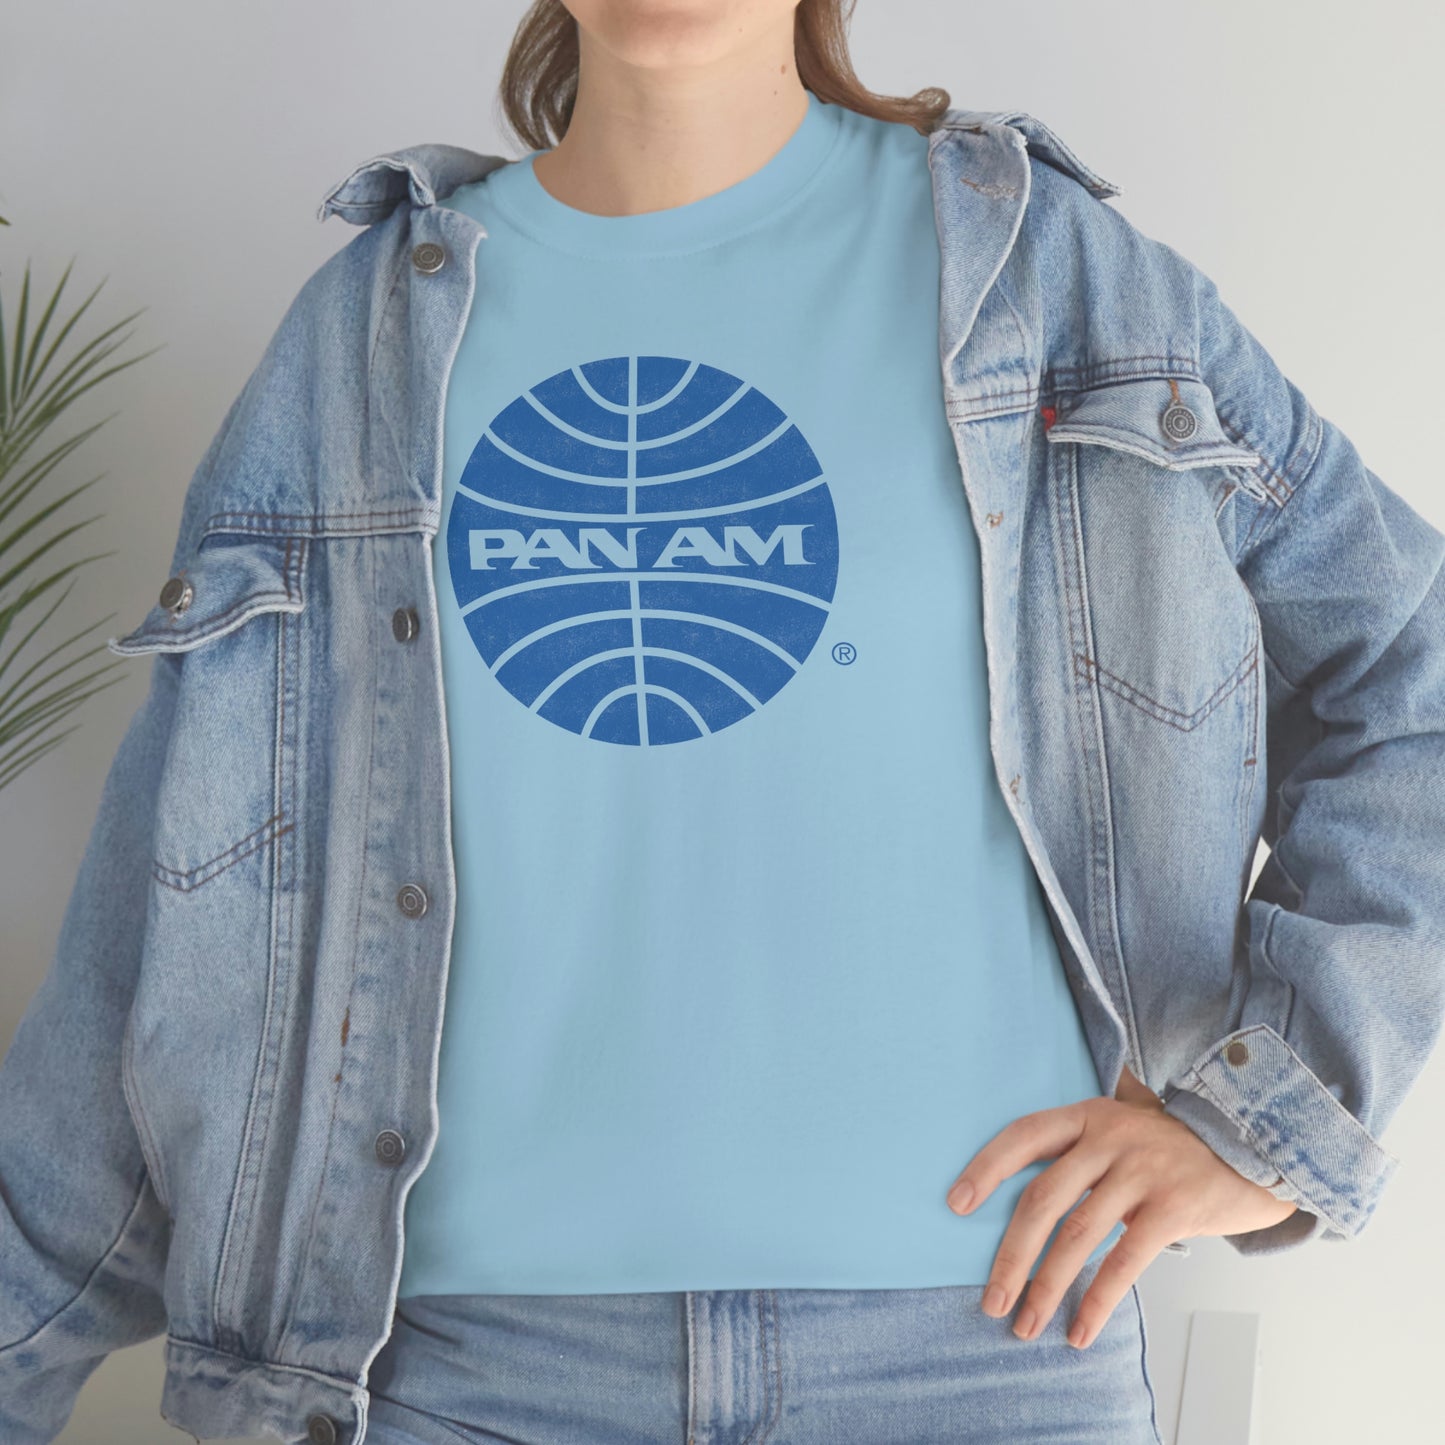 Pan-Am T-Shirt